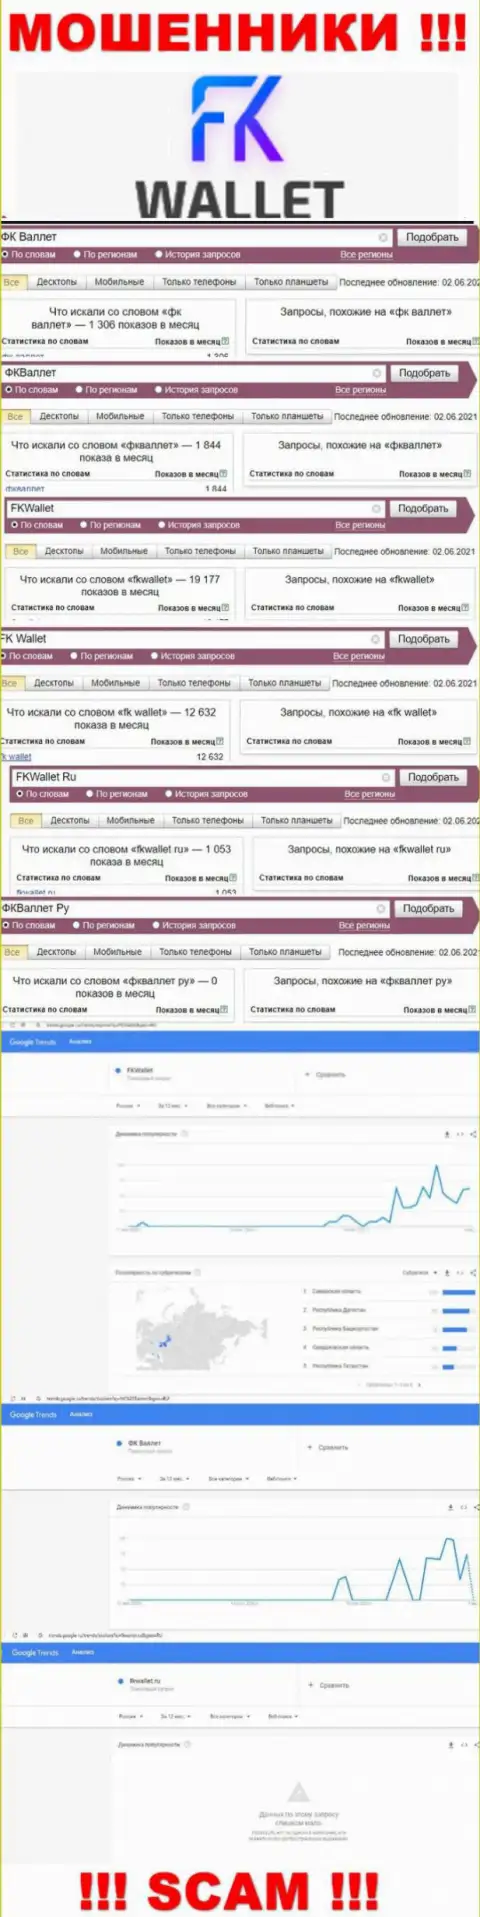 Скриншот результатов онлайн запросов по жульнической организации FKWallet